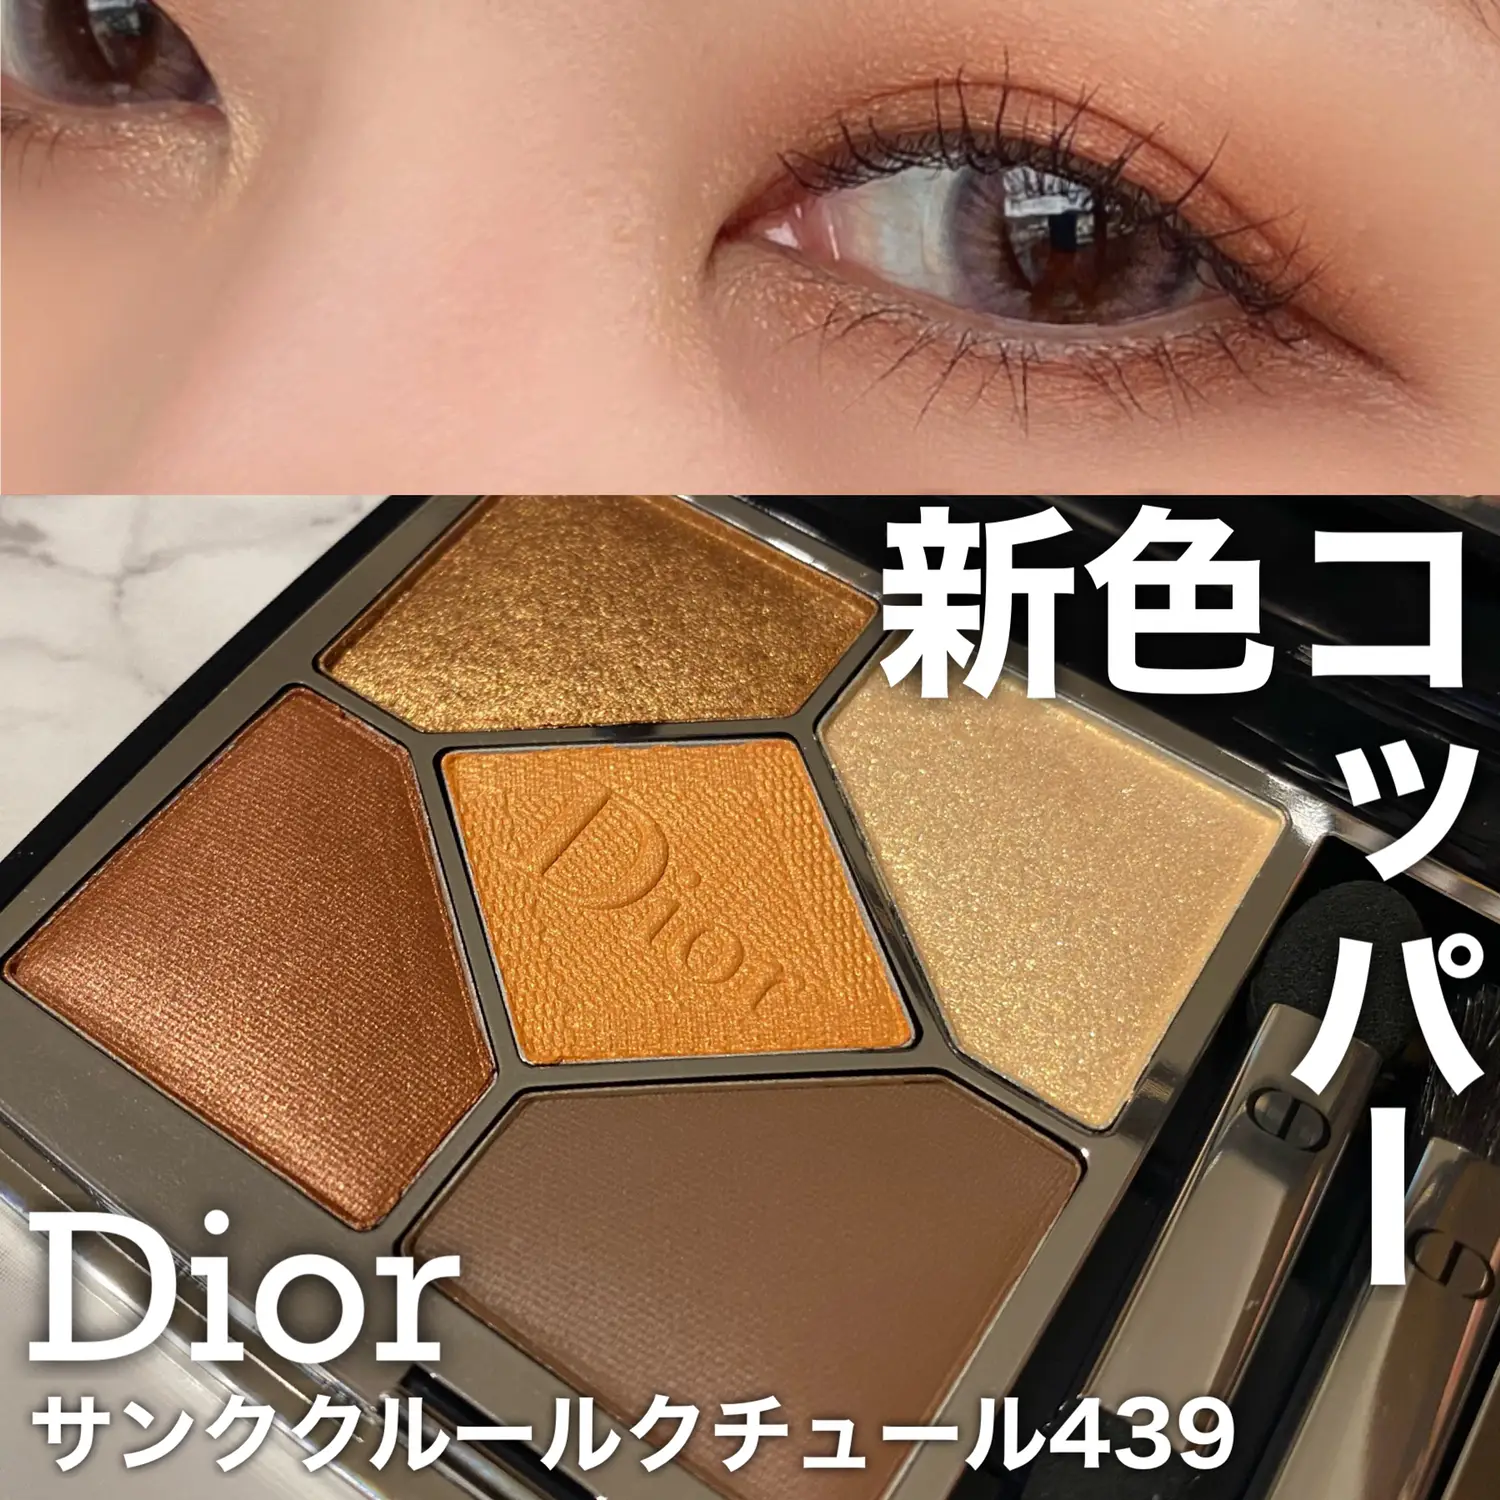 コスメ/美容Dior アイシャドウ 439 - mirabellor.com